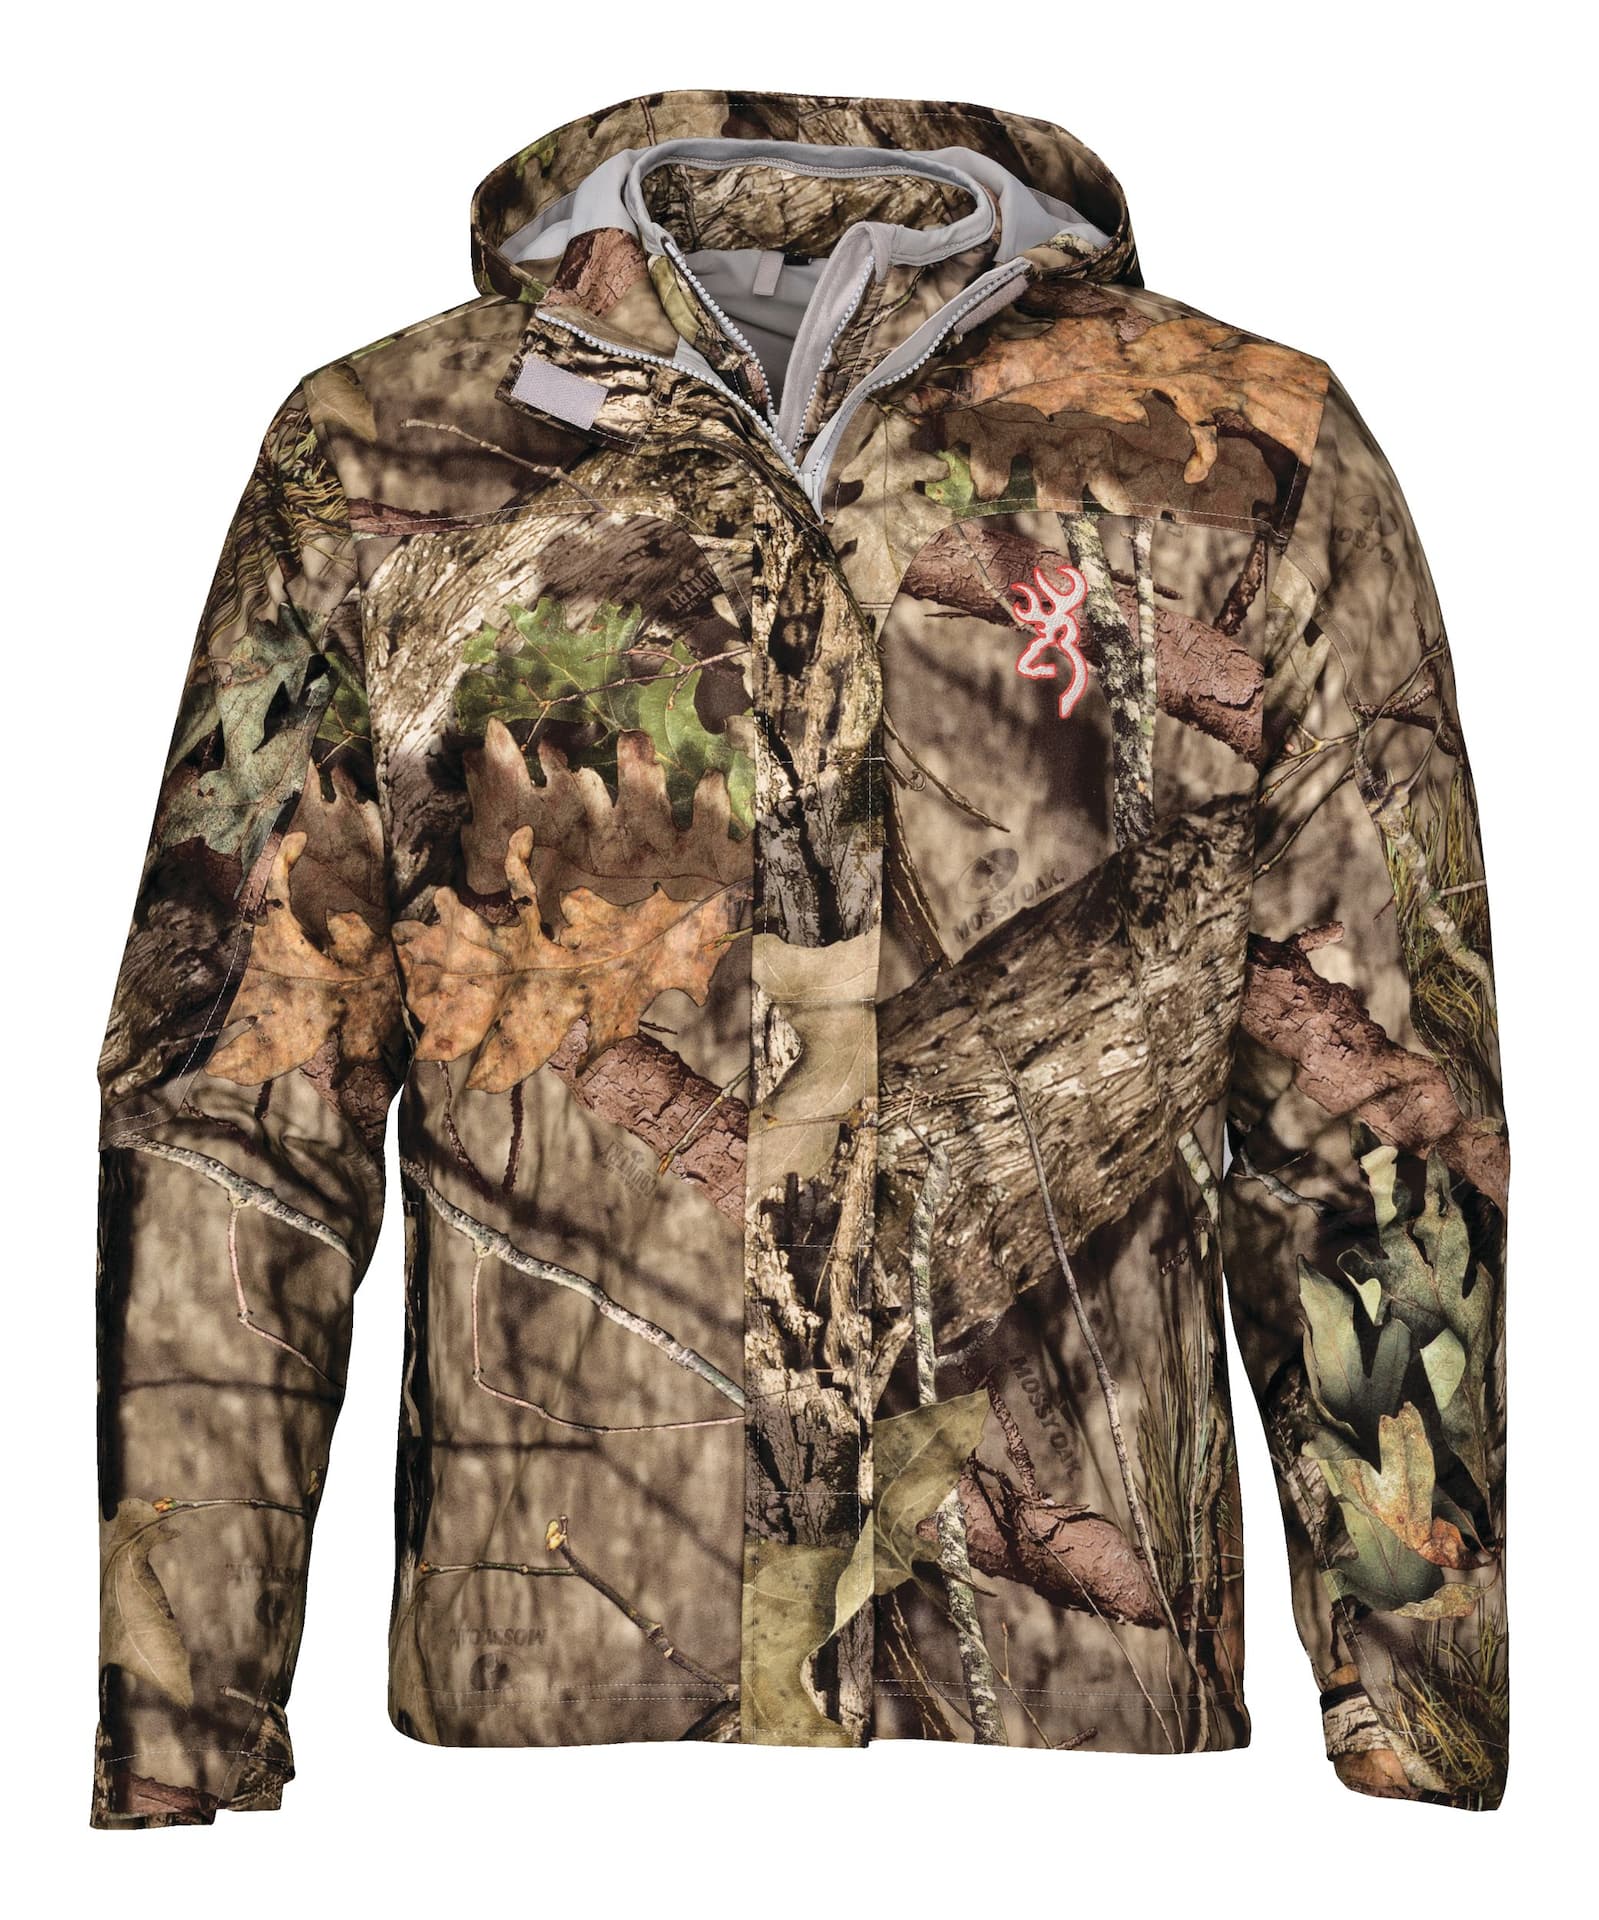 Mossy Oak 11-Piece Hunting Field Dress Kit for $10 - 6835